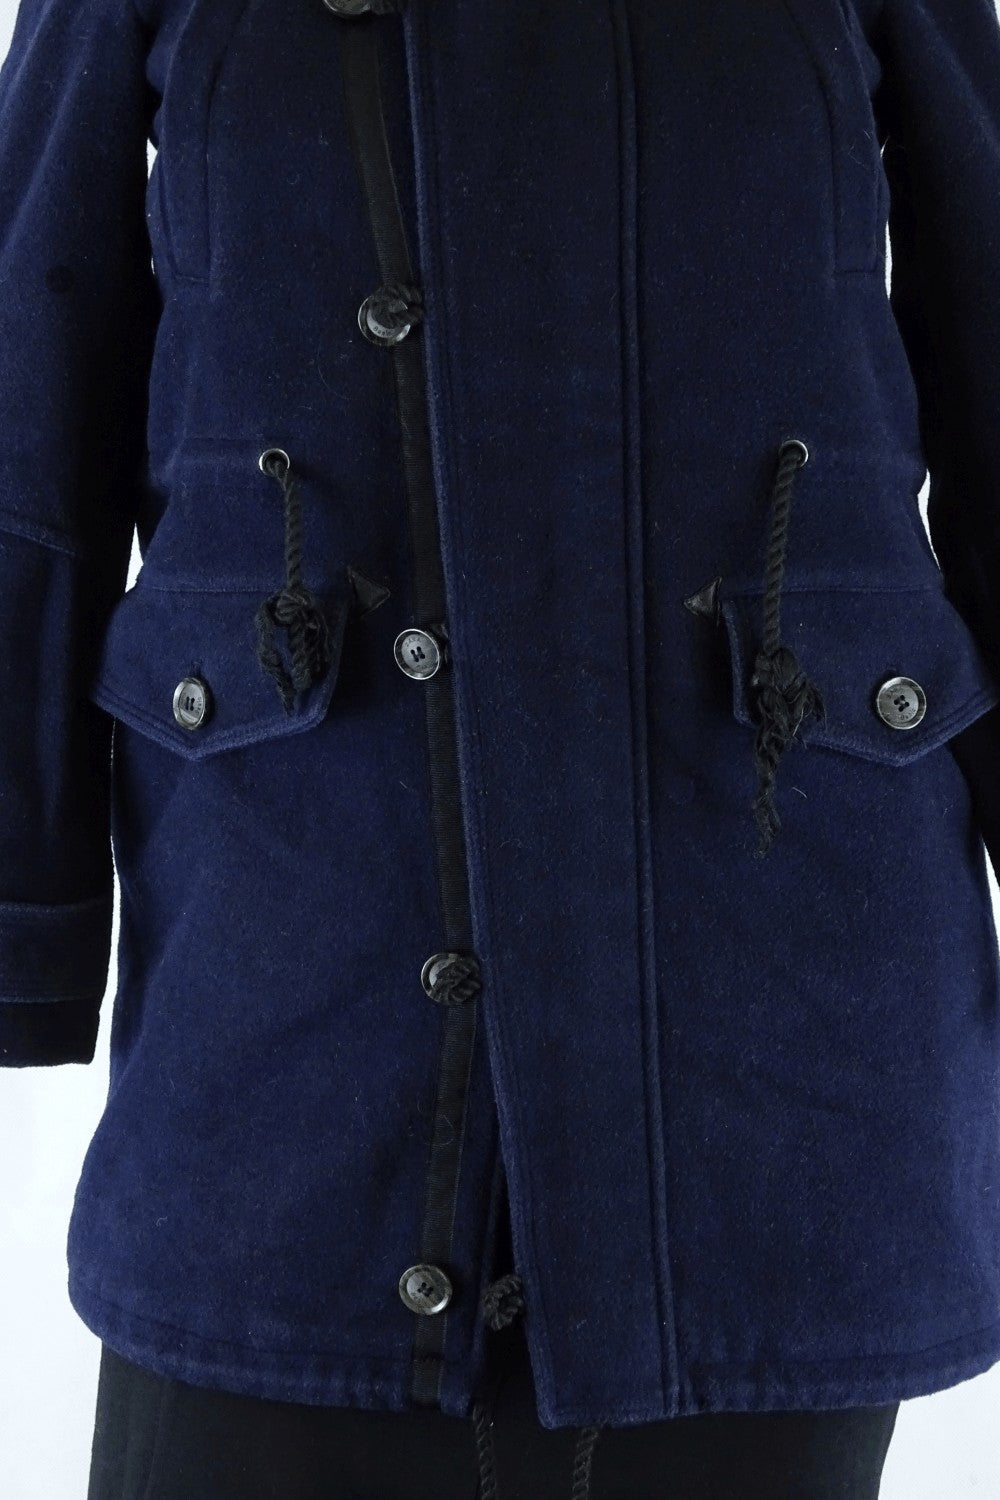 Zara Basic Navy Coat S